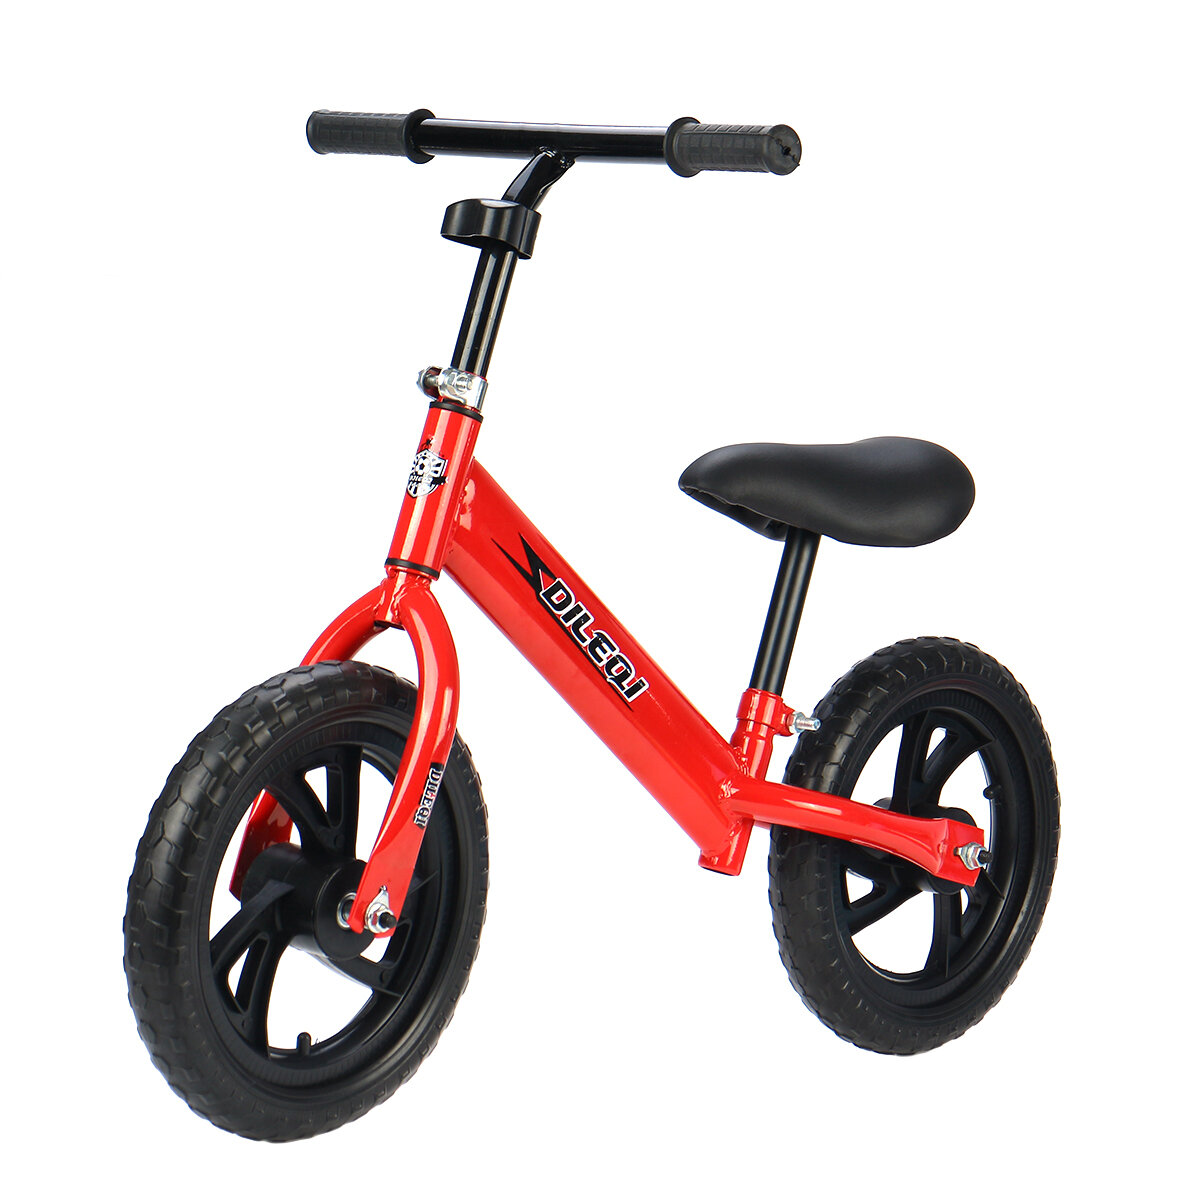 Kinderbalansfiets voor 2-7-jarigen, fietsframe met gemakkelijke instap voor jongens en meisjes, peuterstepfiets zonder pedaal, speelgoed om op te rijden voor kinderen, lichtgewicht kinderfiets.